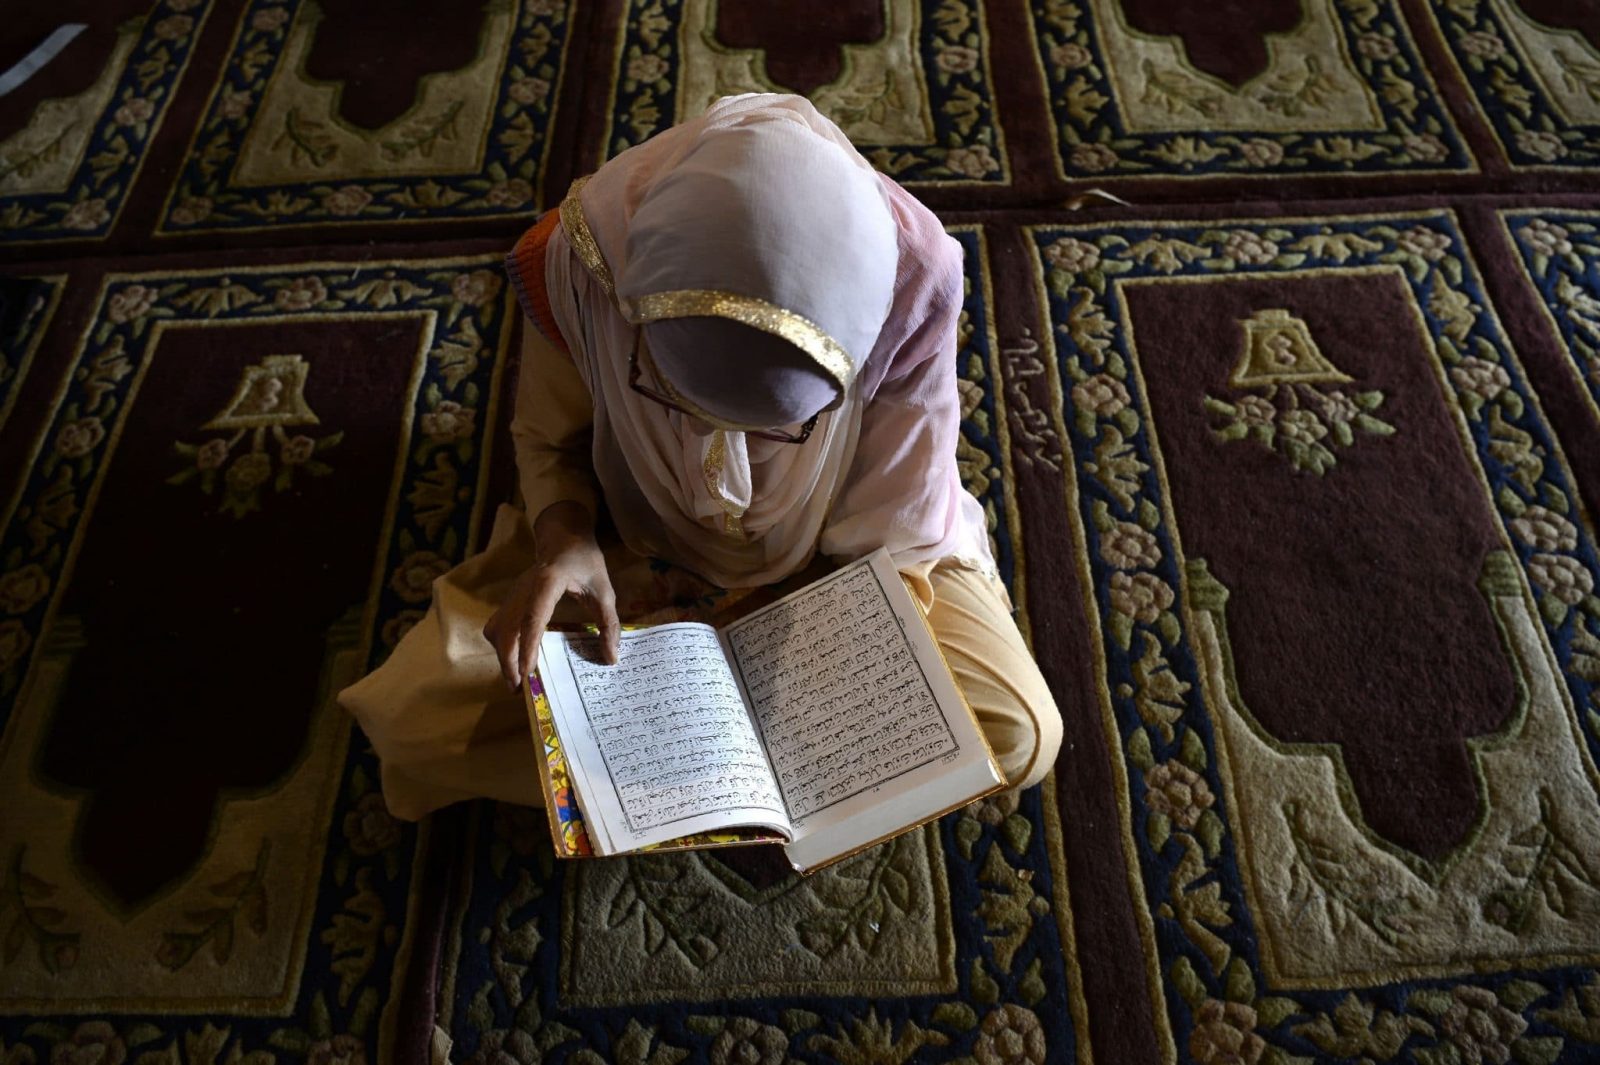 حكم قراءة المرأة للقرآن بدون حجاب